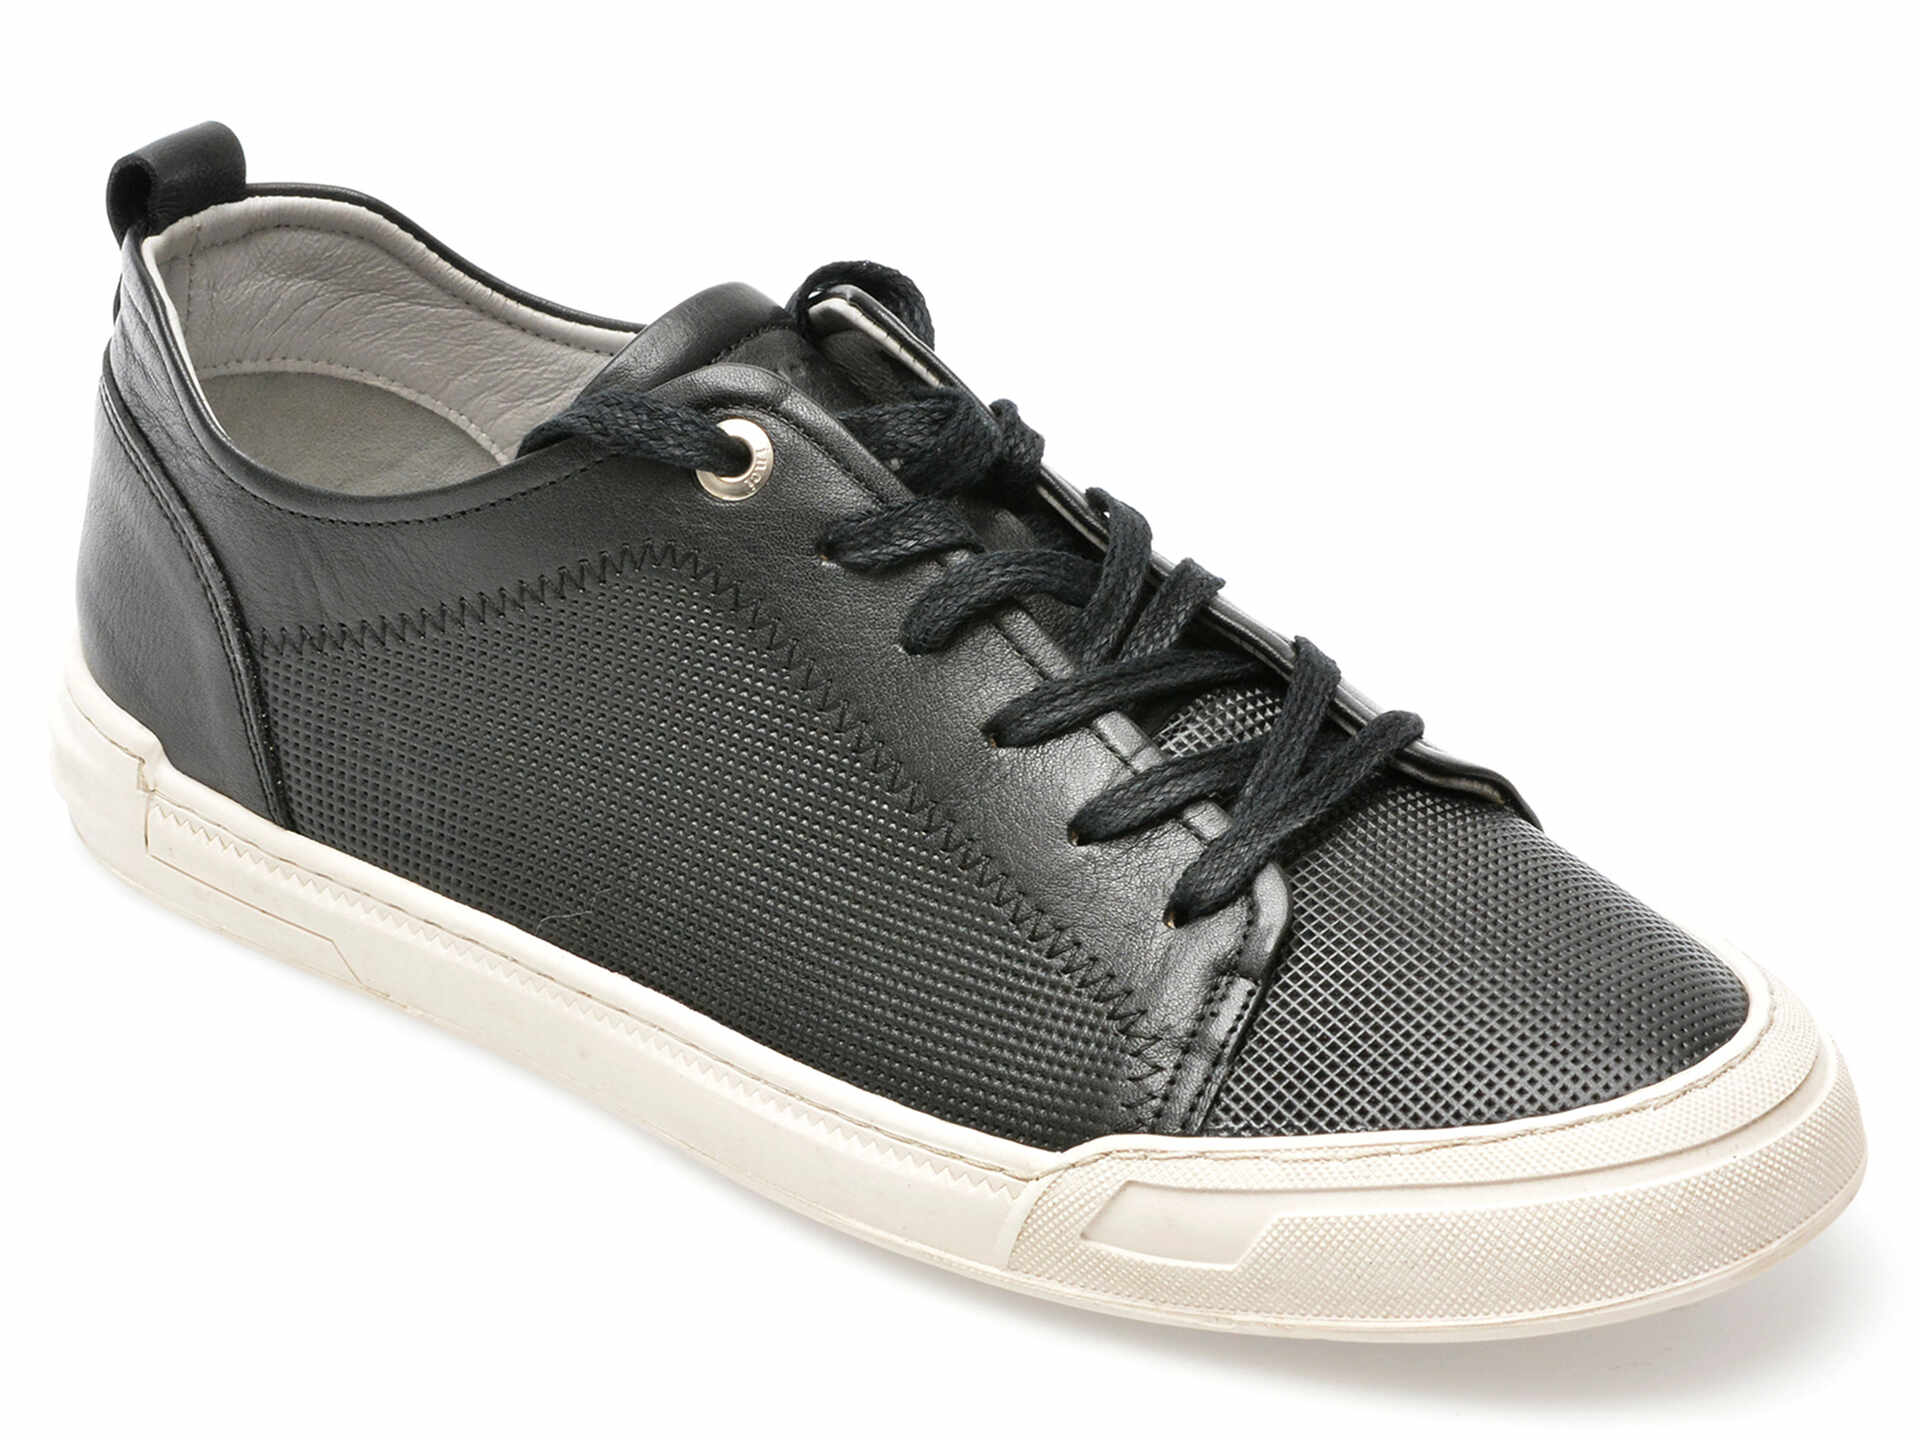 Pantofi INCI negri, CVK2807, din piele naturala